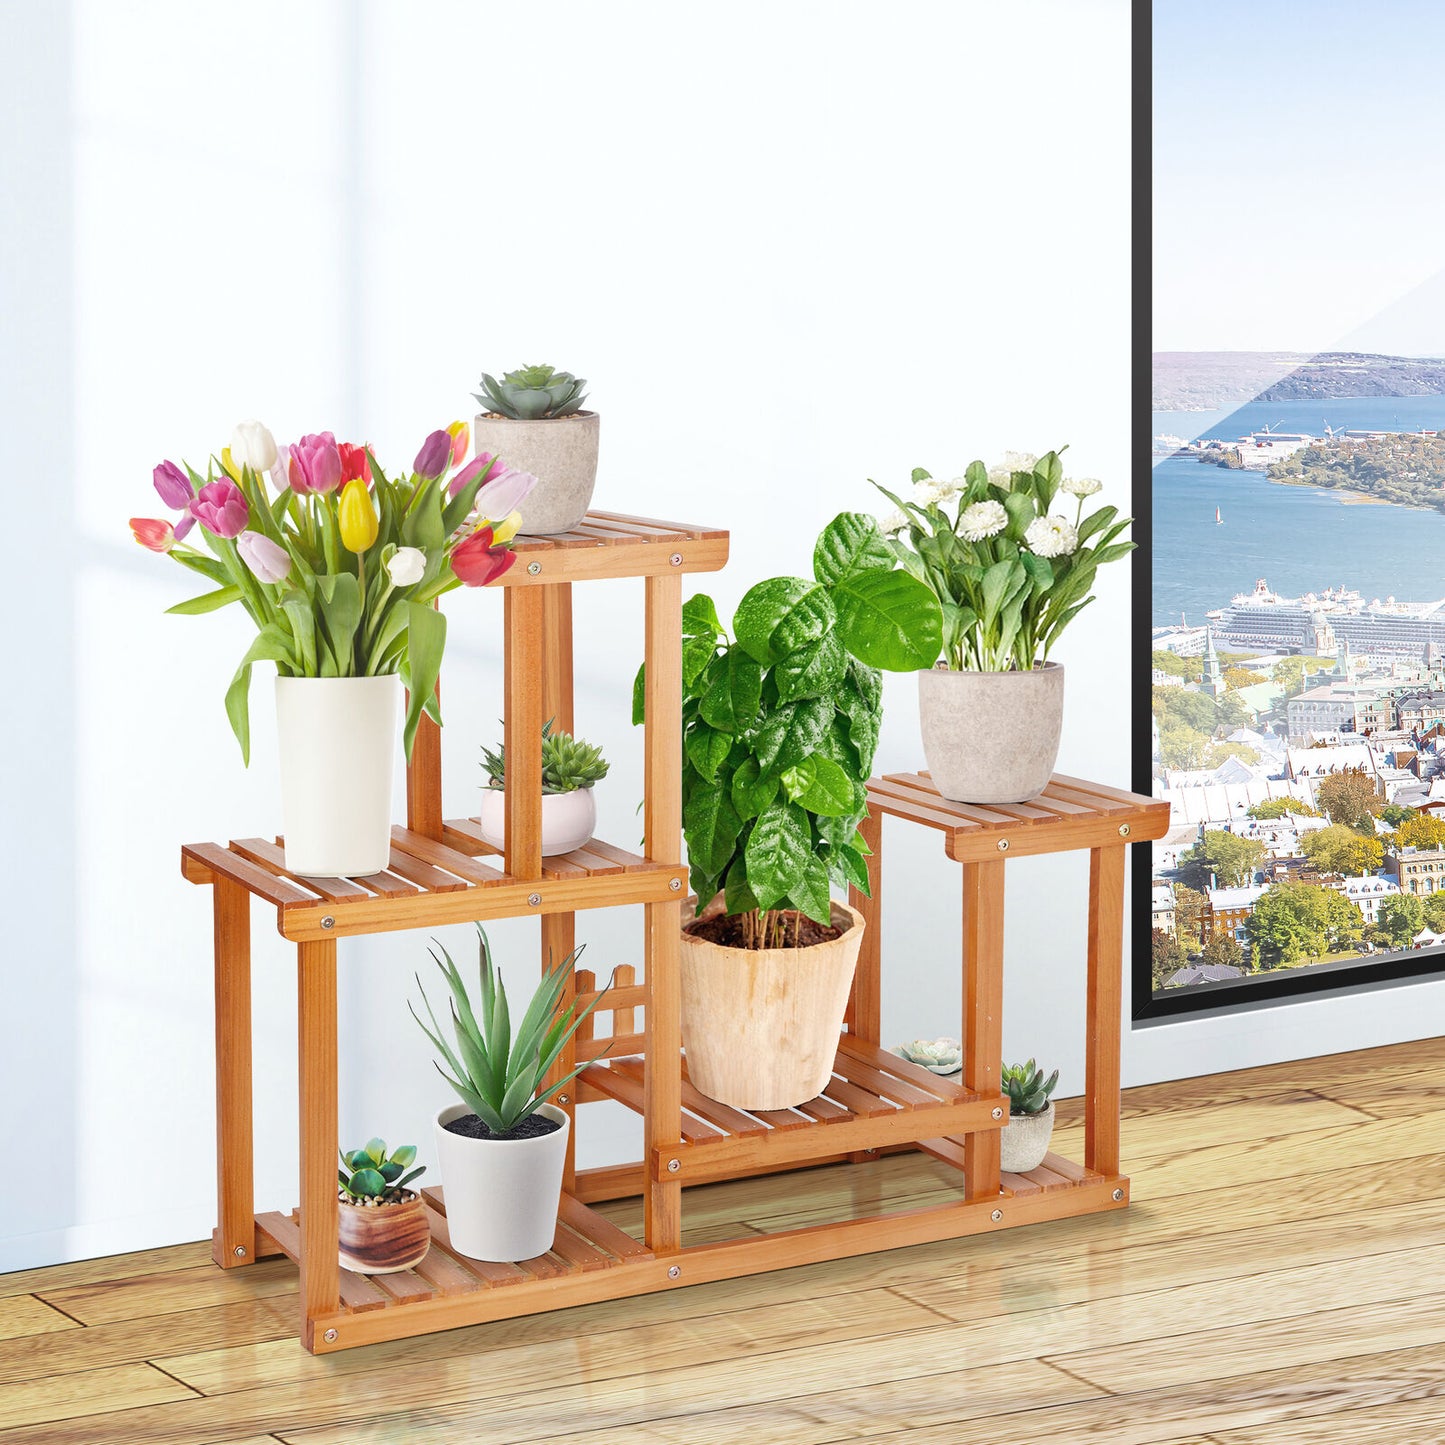 4 Tier Wood Plant Stand Flower Planter Shelf Rack Storage Display Indoor Outdoor